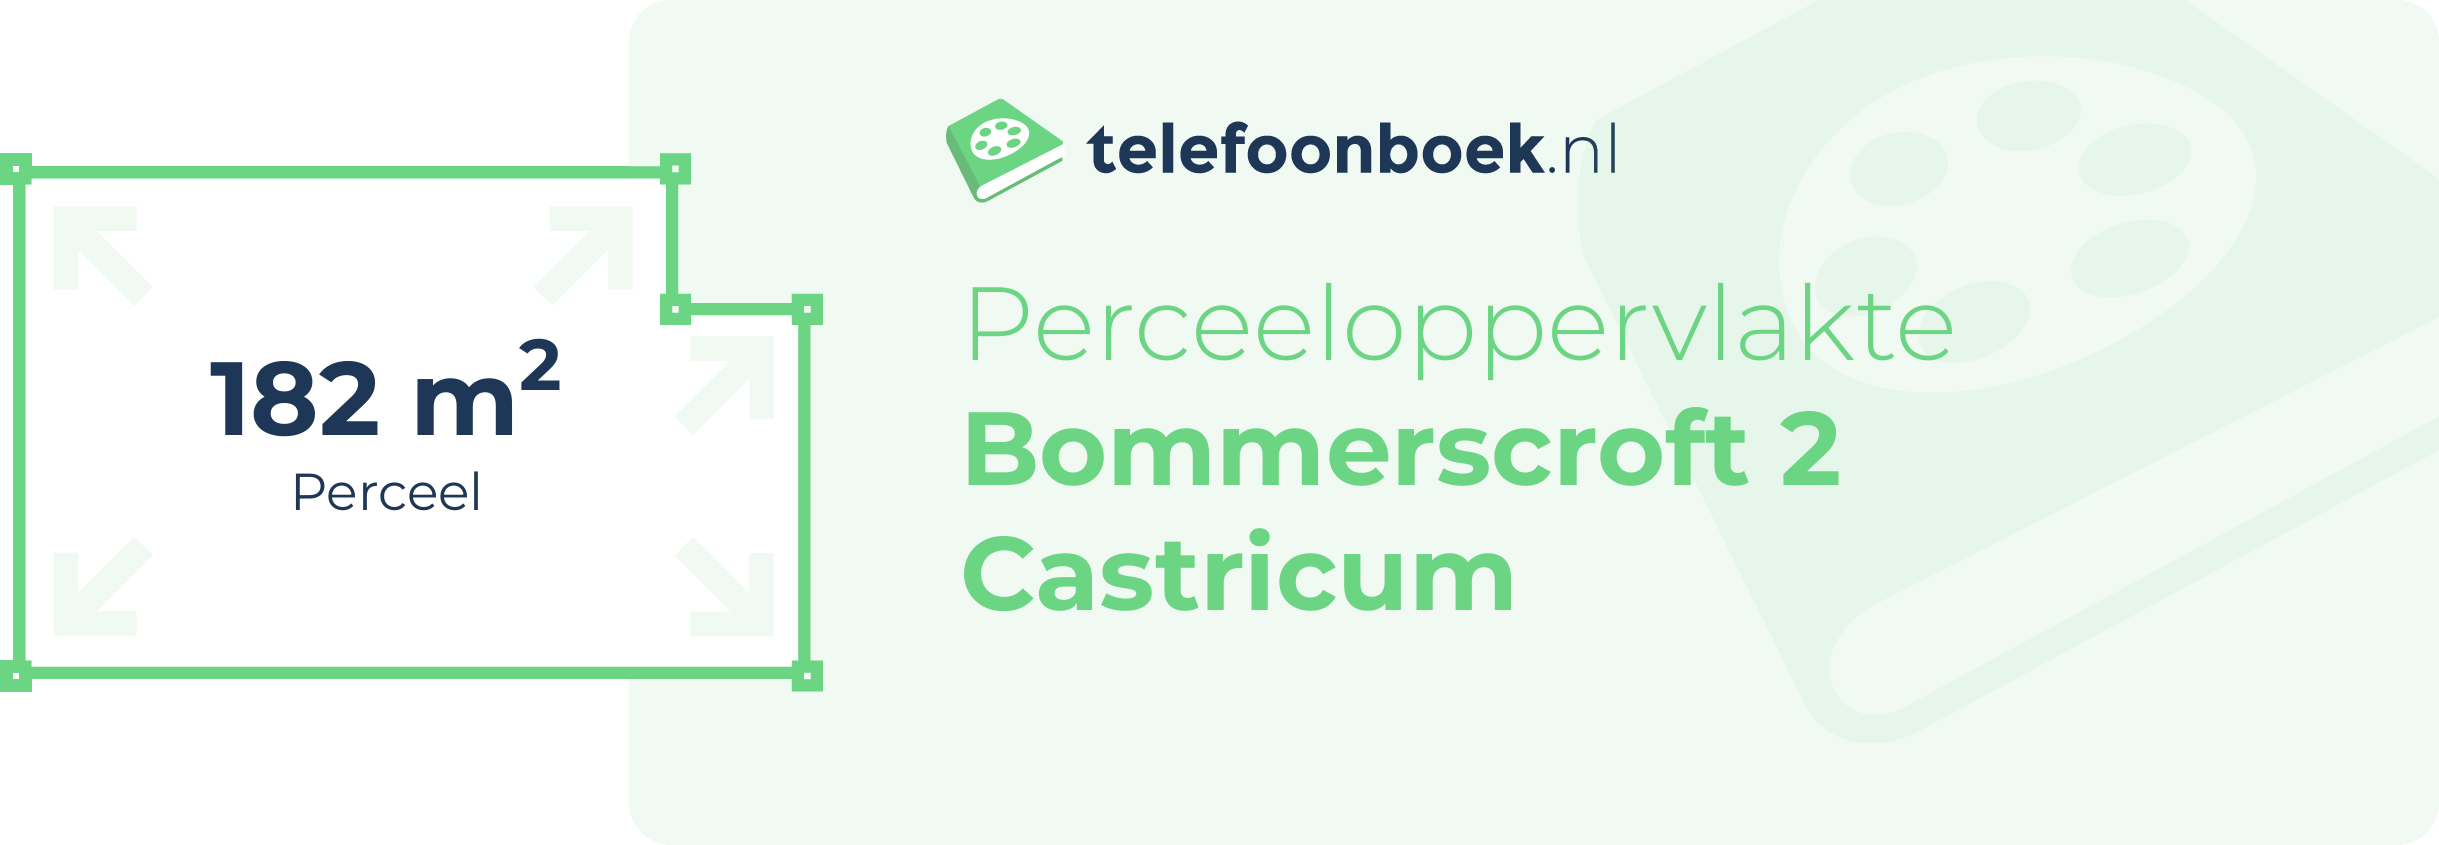 Perceeloppervlakte Bommerscroft 2 Castricum